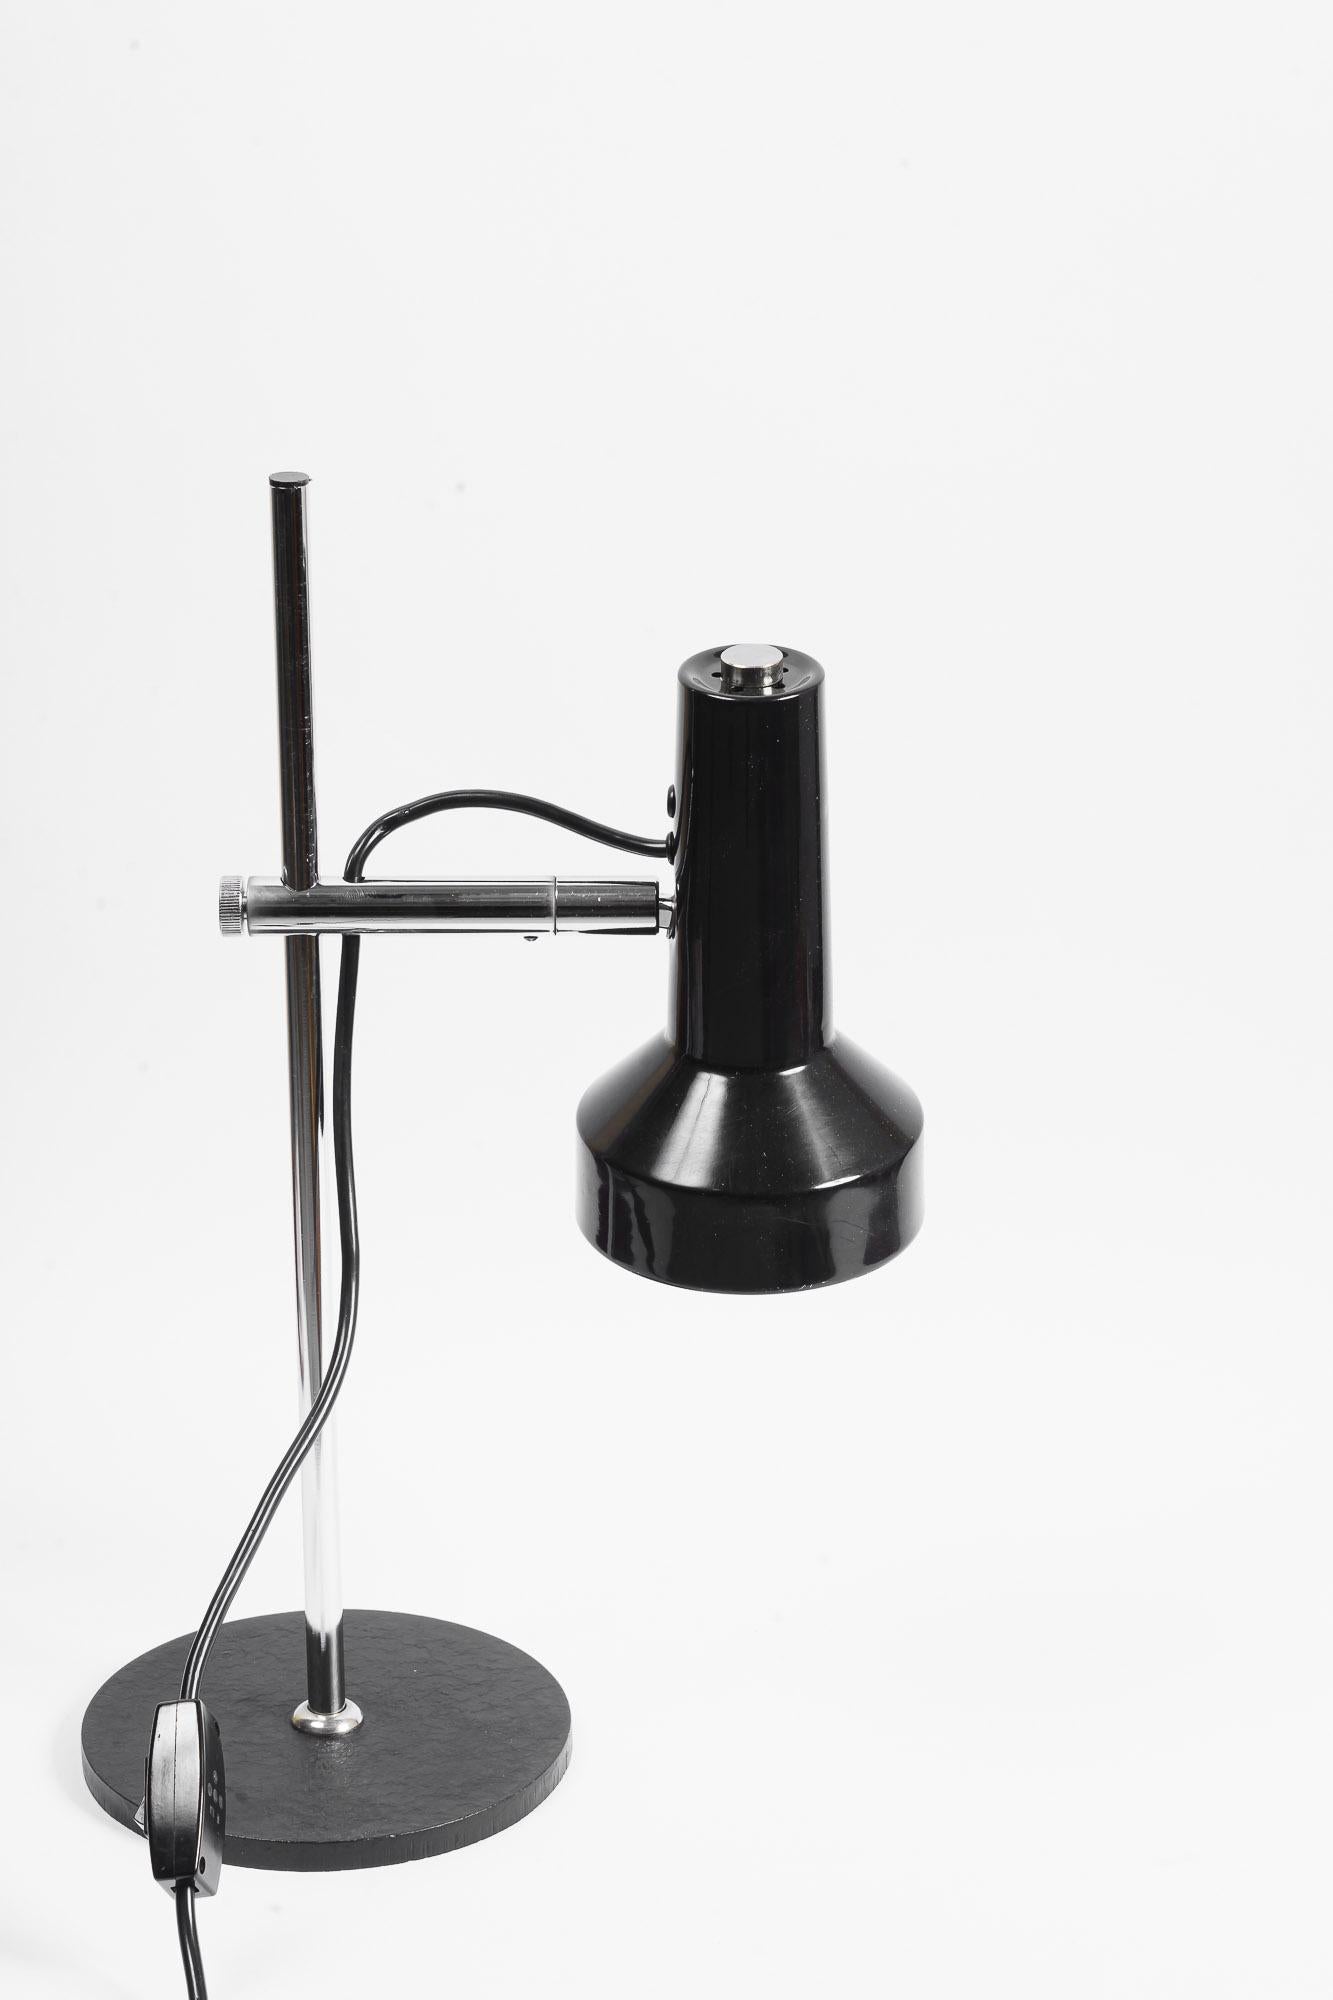 Lampe de table réglable italie vers 1960
La hauteur est réglable de 20 à 50 cm.